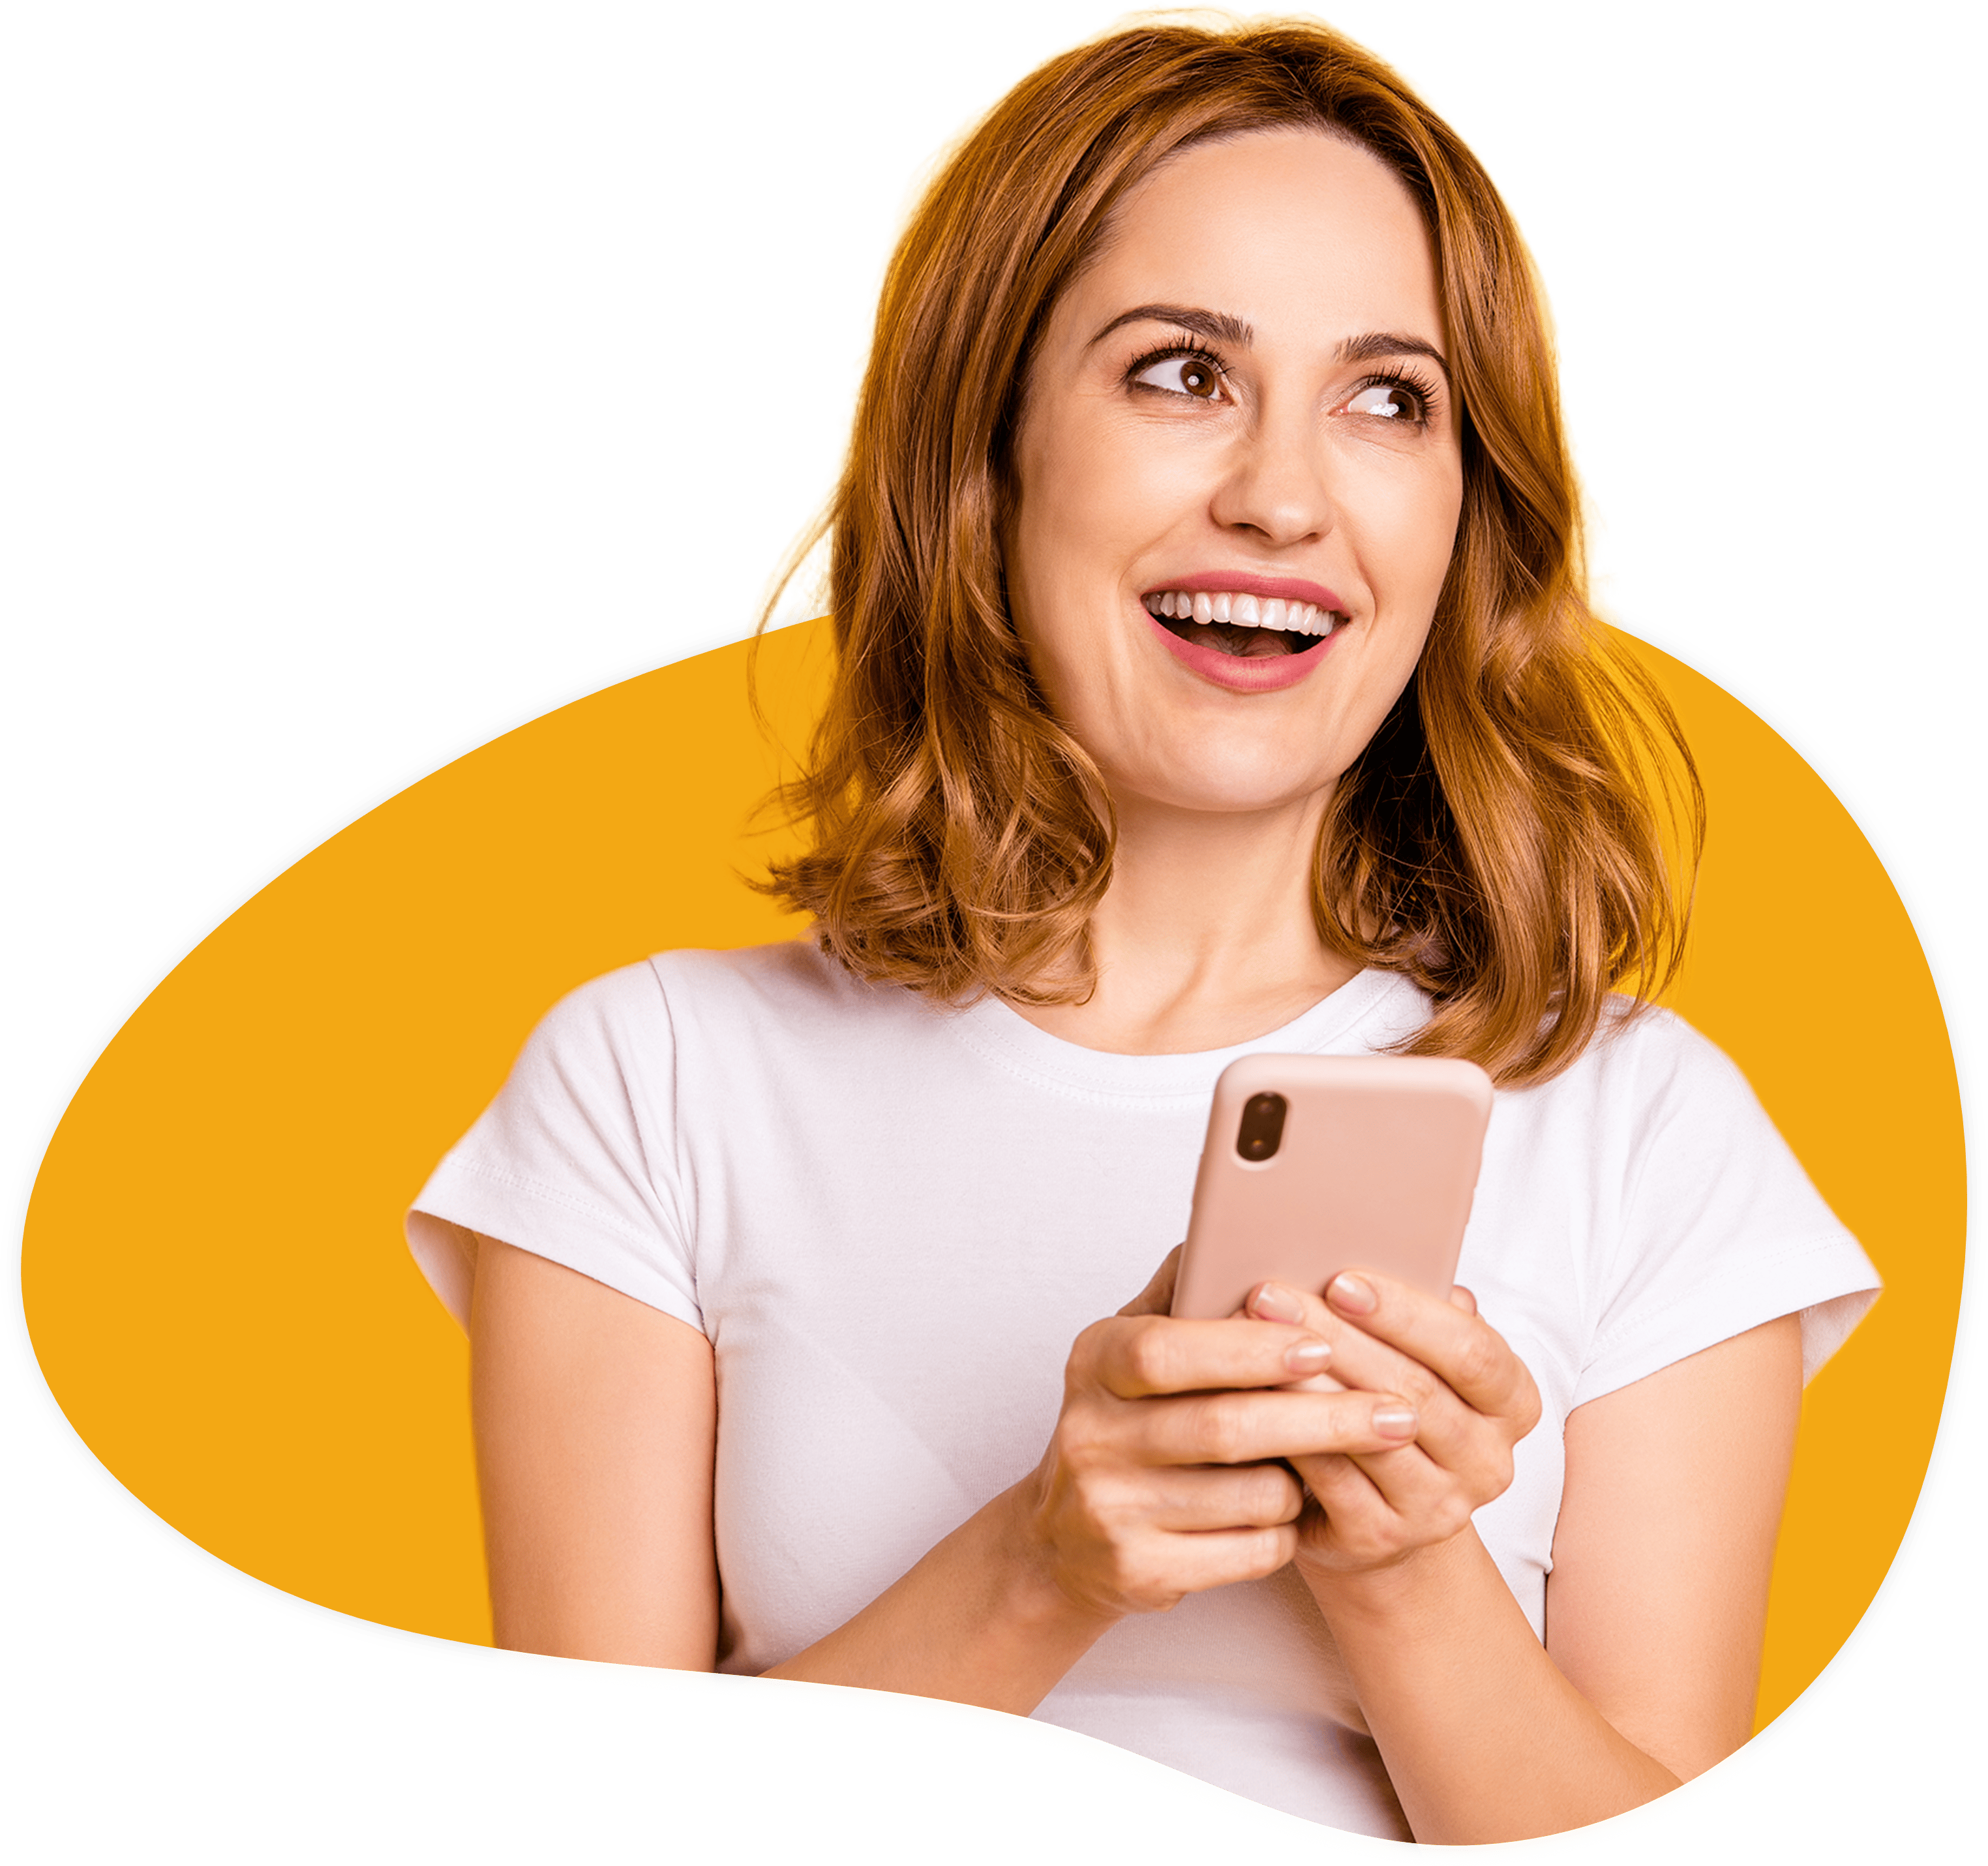 Zu sehen ist eine junge Frau, die ihr Smartphone in der Hand hält und sich freut